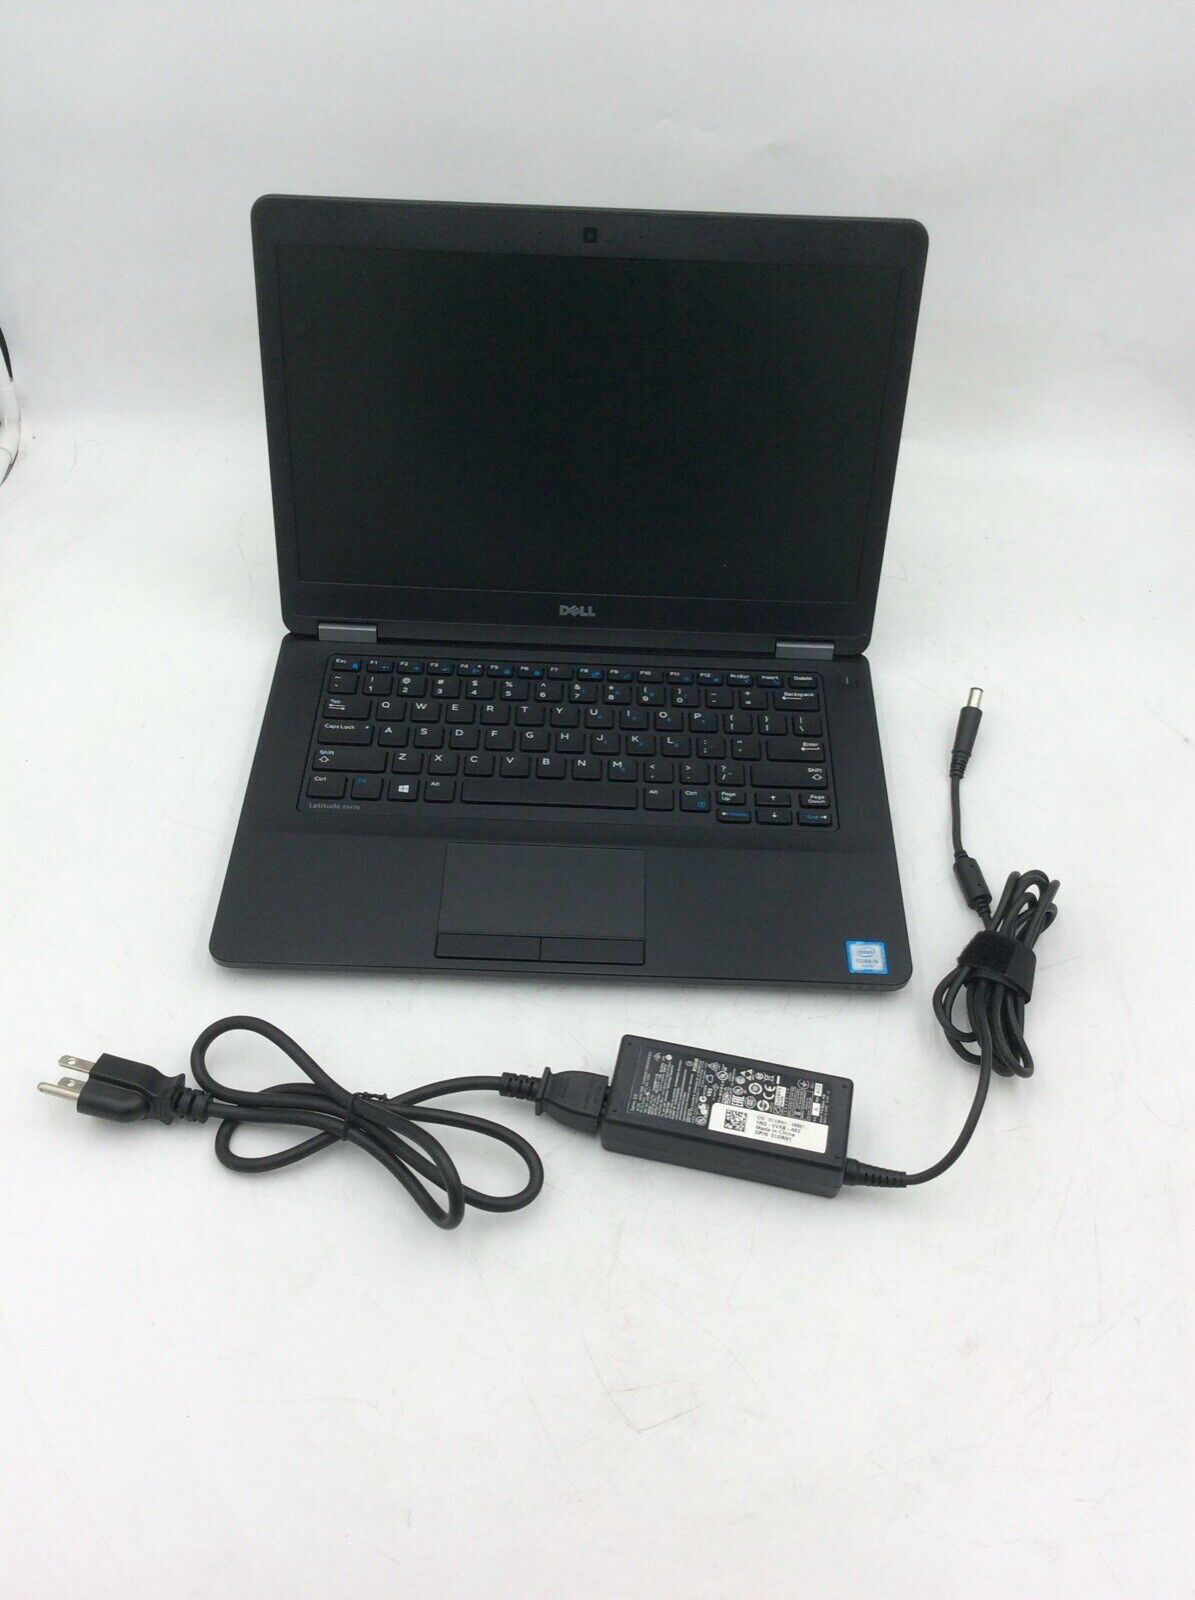 Lenovo Thinkpad E15 15.6